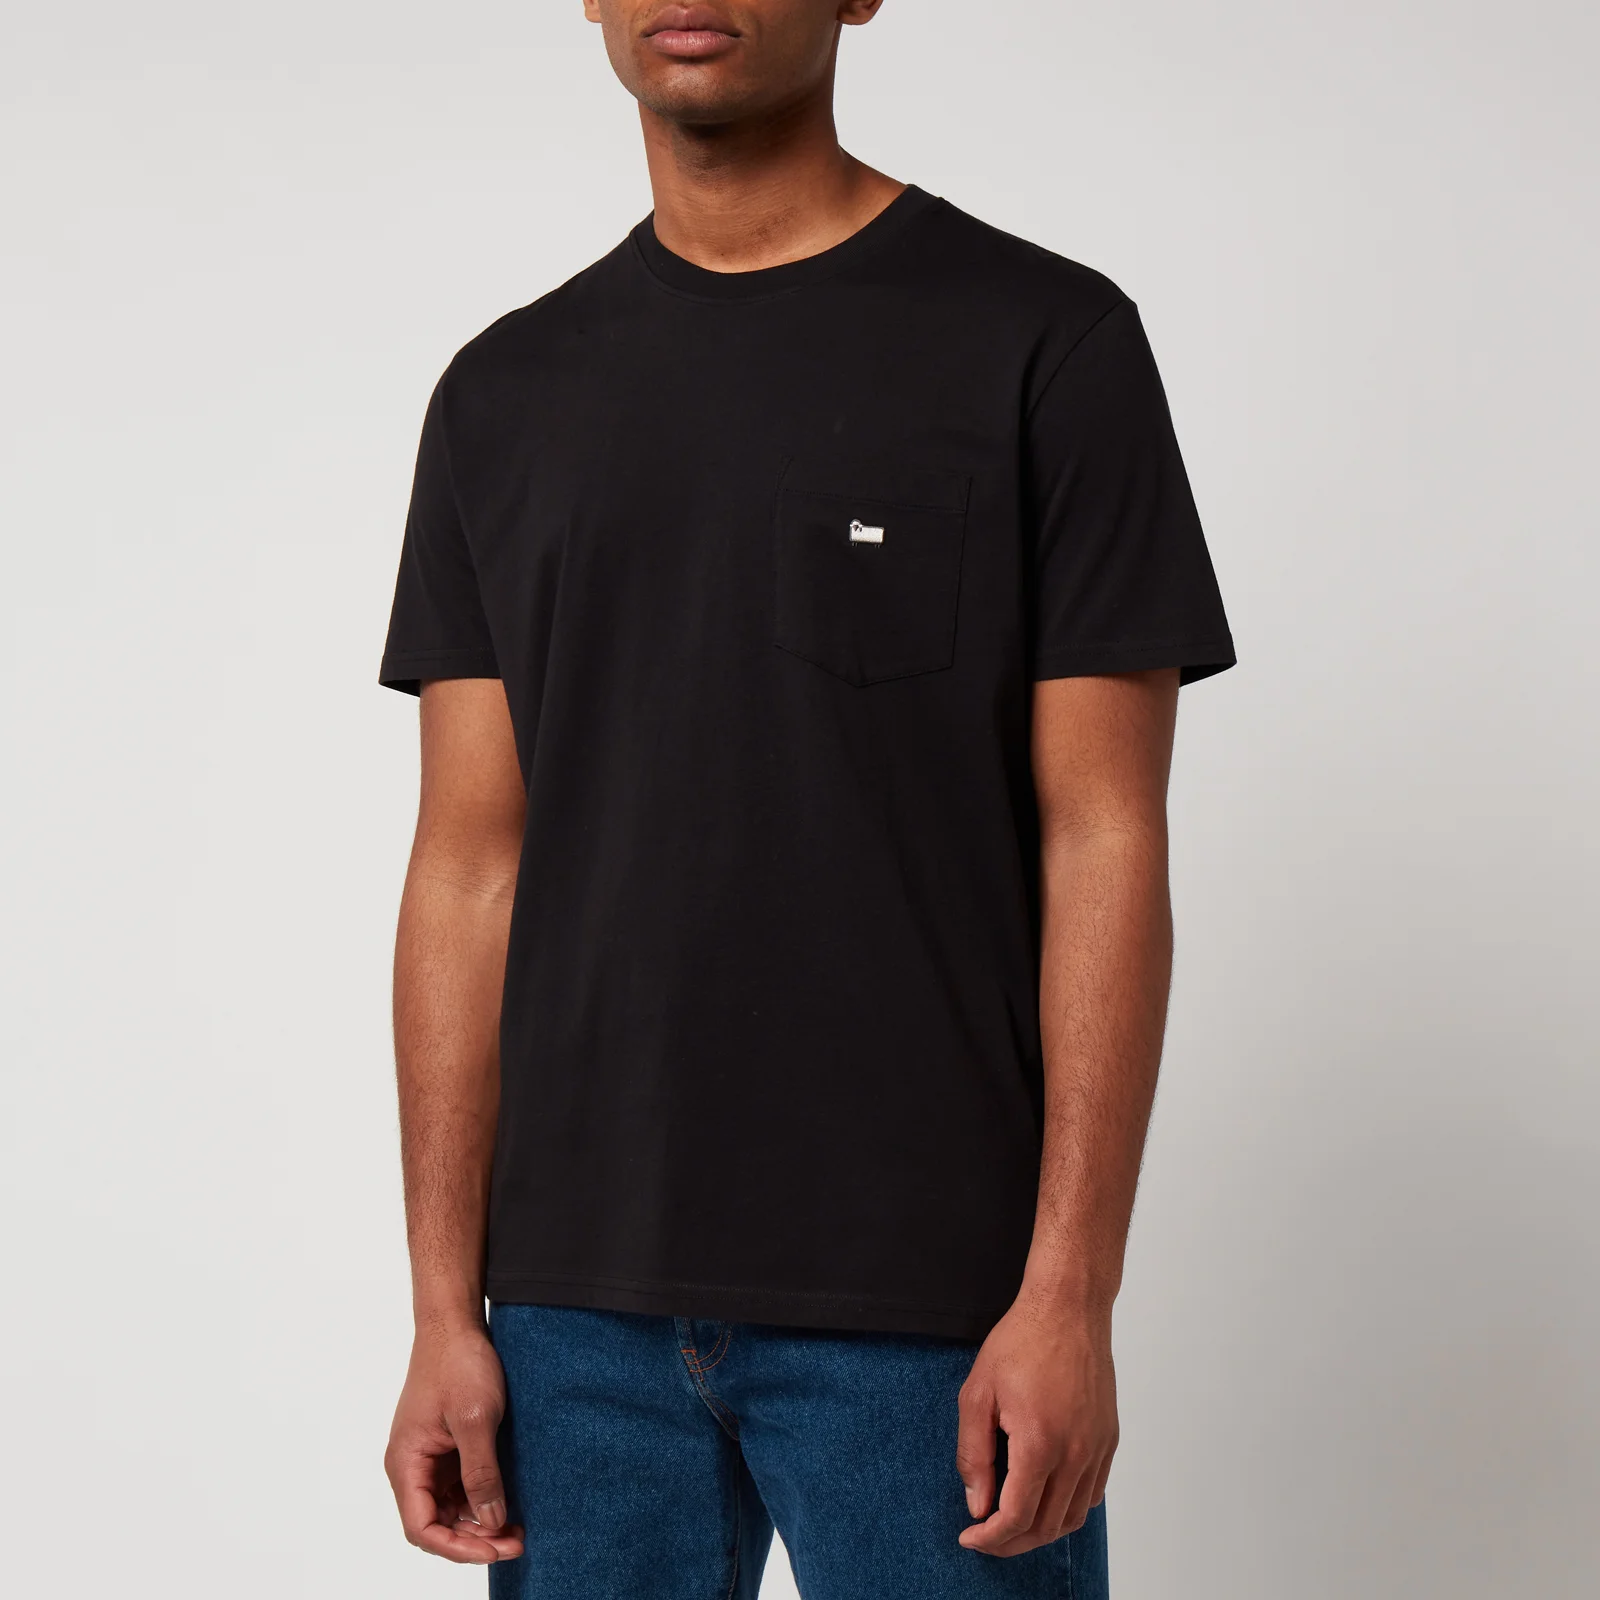 Woolrich Men's Pocket T-Shirt - Black Image 1